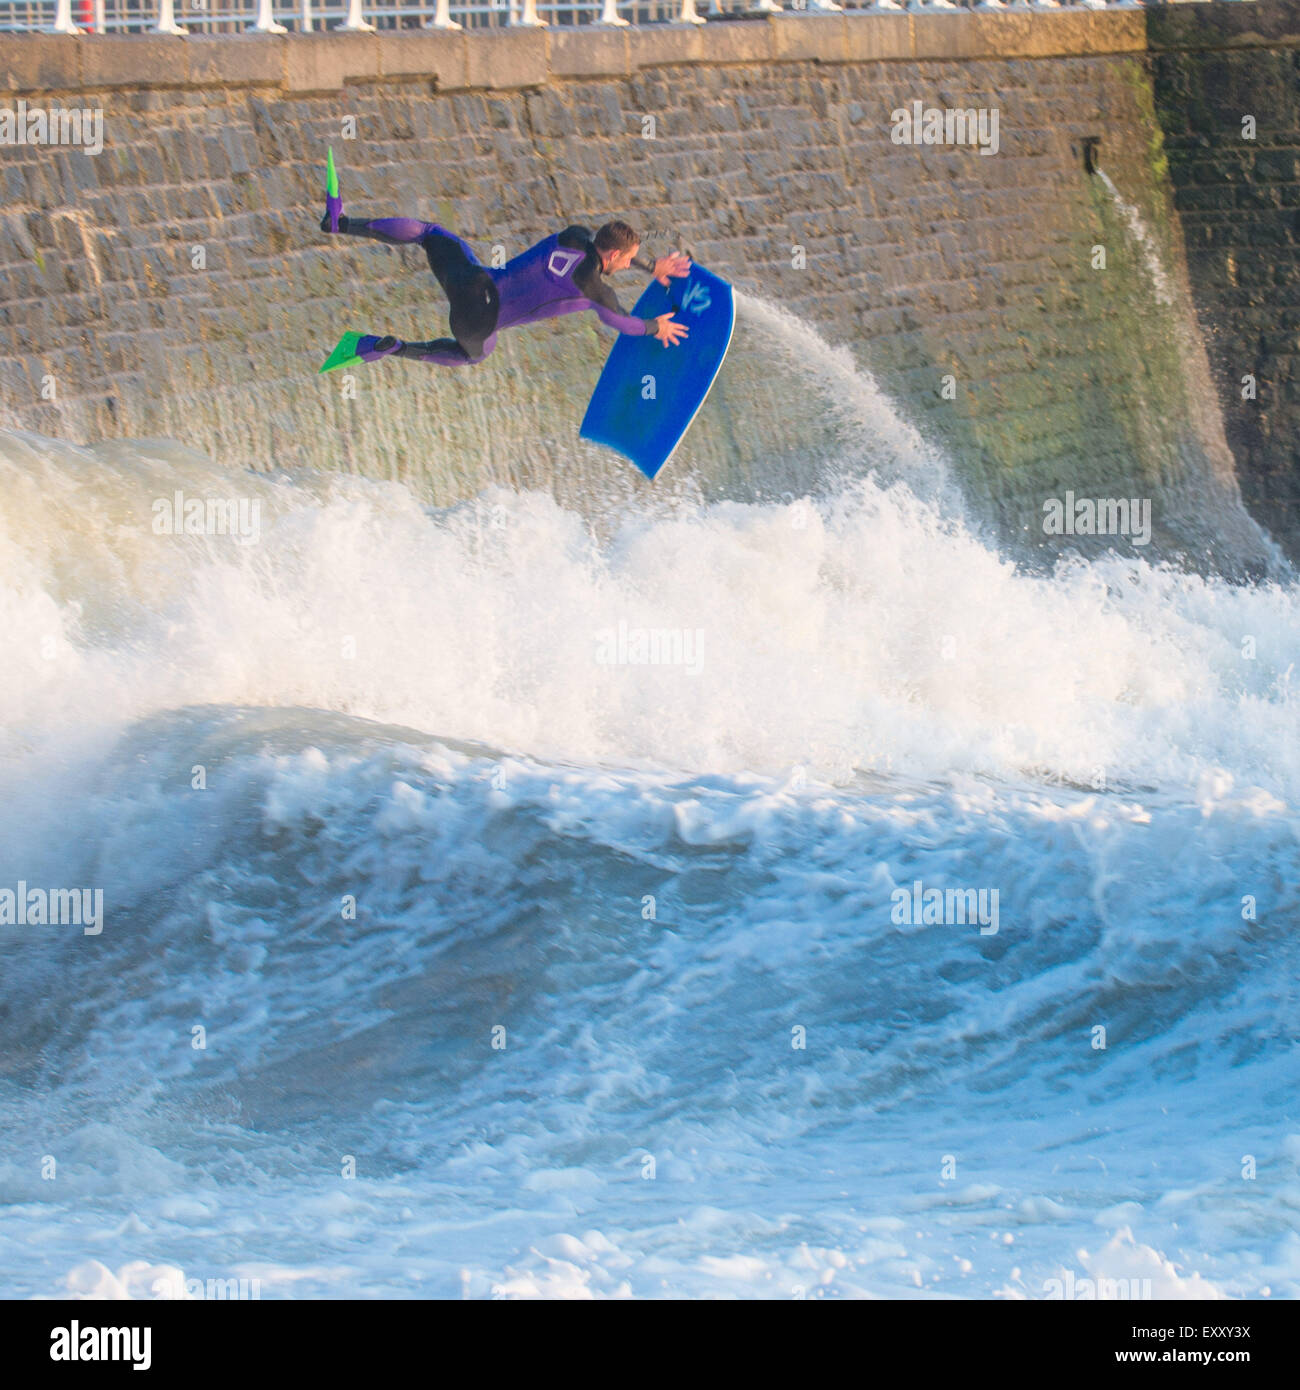 Aberystwyth Wales UK, Freitag, 17. Juli 2015 UK Wetter: Rico Martin macht das Beste aus der ungewöhnlich starke Winde und hohe Wellen-Bodyboard und Schwimmen im Meer in Aberystwyth, Wales.    Bildnachweis: Keith Morris / Alamy Live News Stockfoto